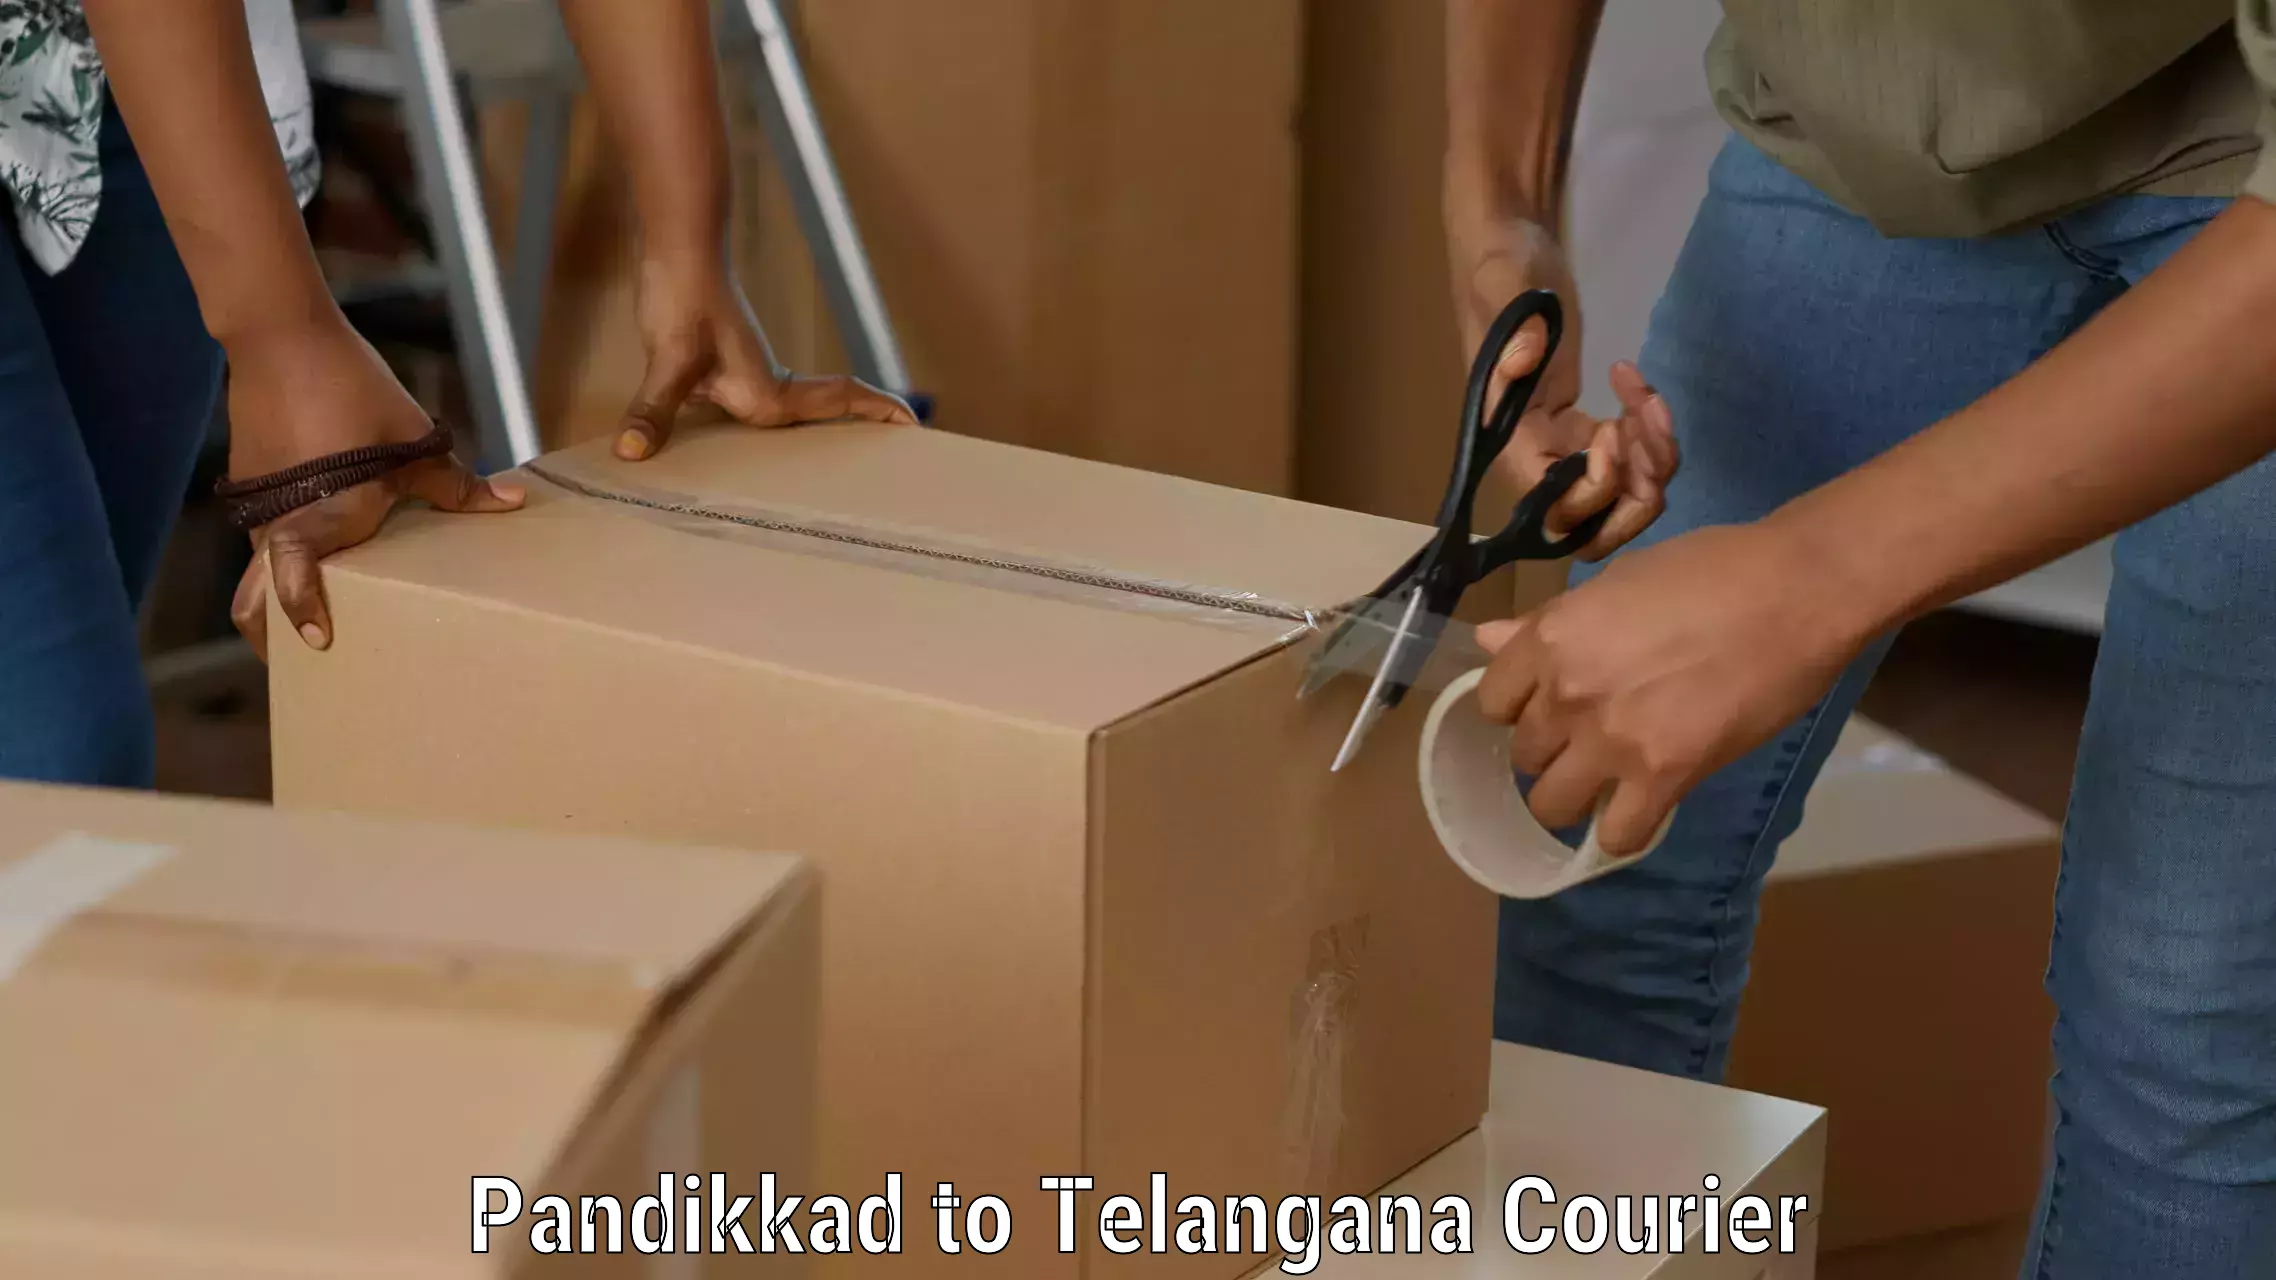 High-efficiency logistics in Pandikkad to Achampet